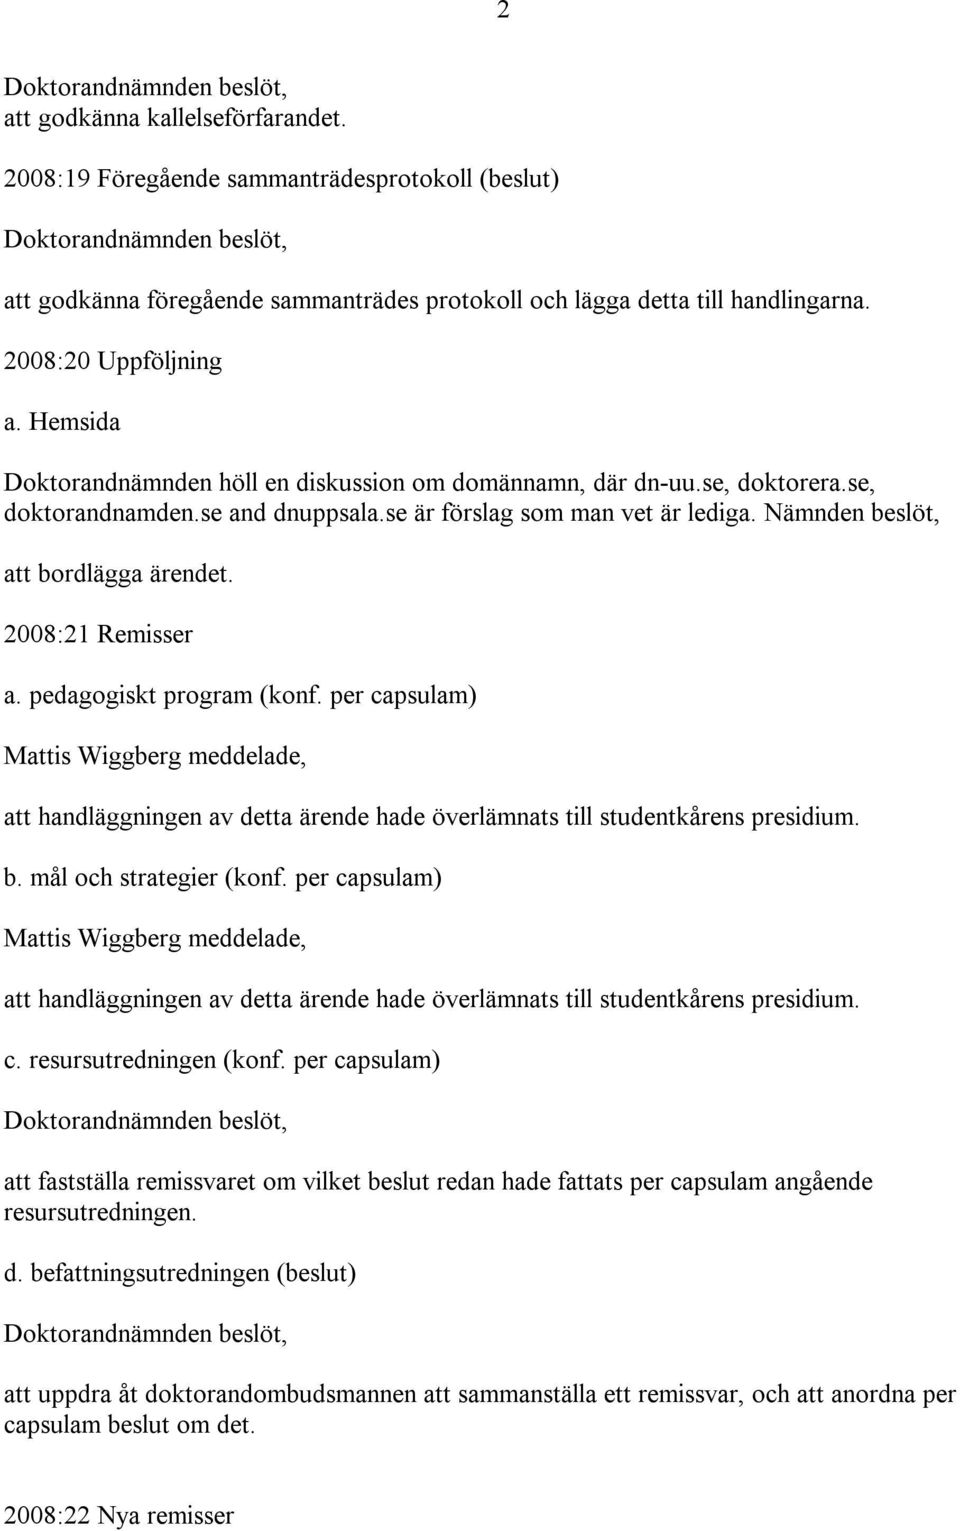 2008:21 Remisser a. pedagogiskt program (konf. per capsulam) Mattis Wiggberg meddelade, att handläggningen av detta ärende hade överlämnats till studentkårens presidium. b. mål och strategier (konf.